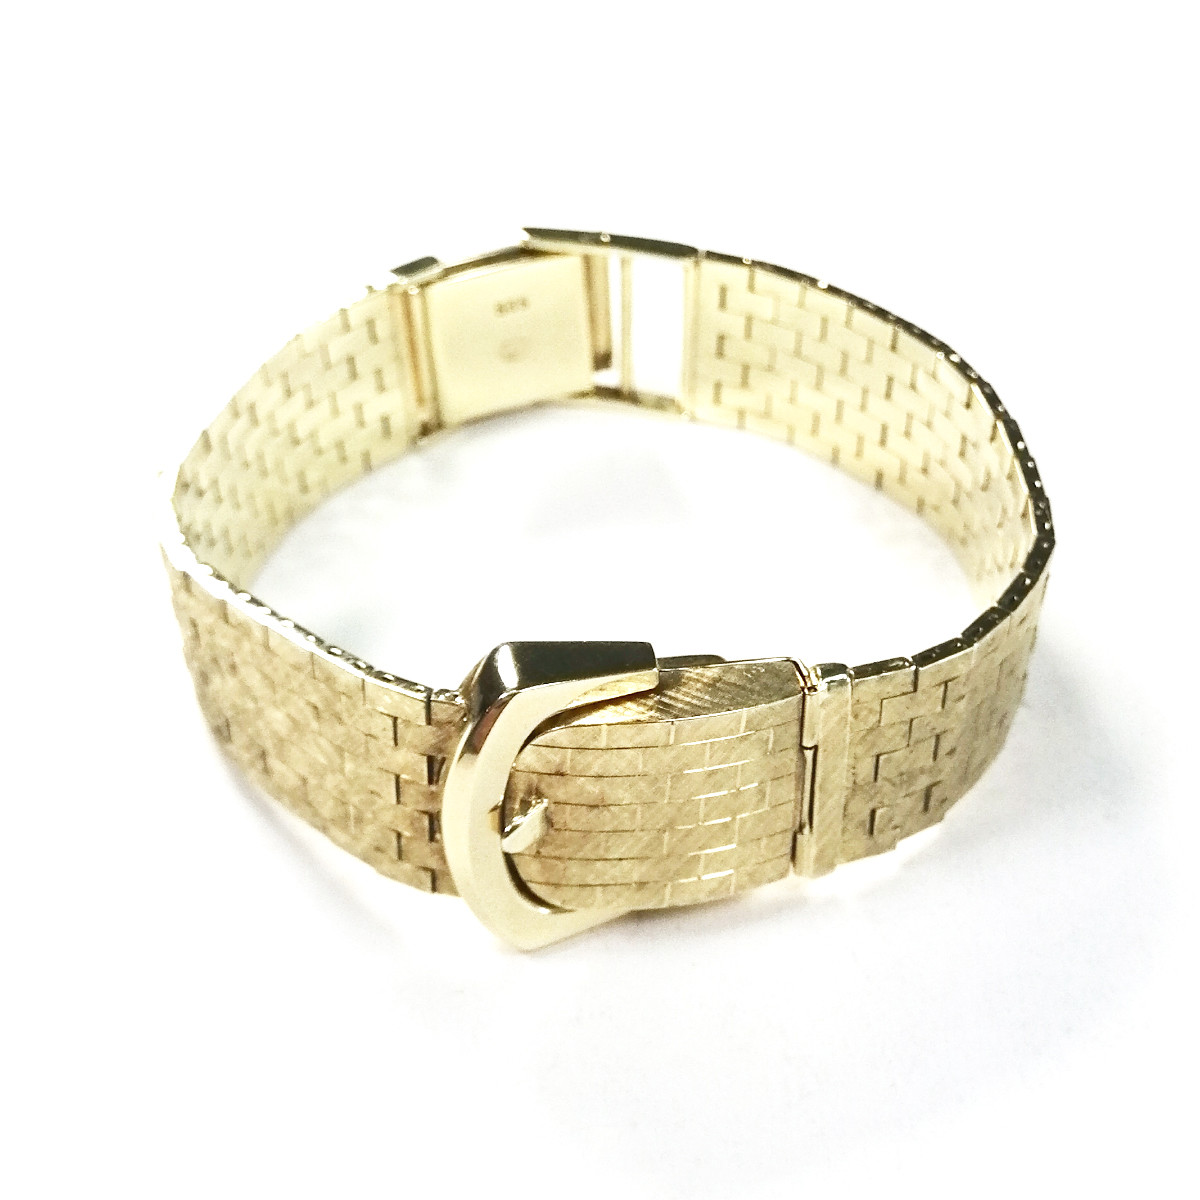 Montre bracelet Piaget or 585 jaune 17 cm - vue 3